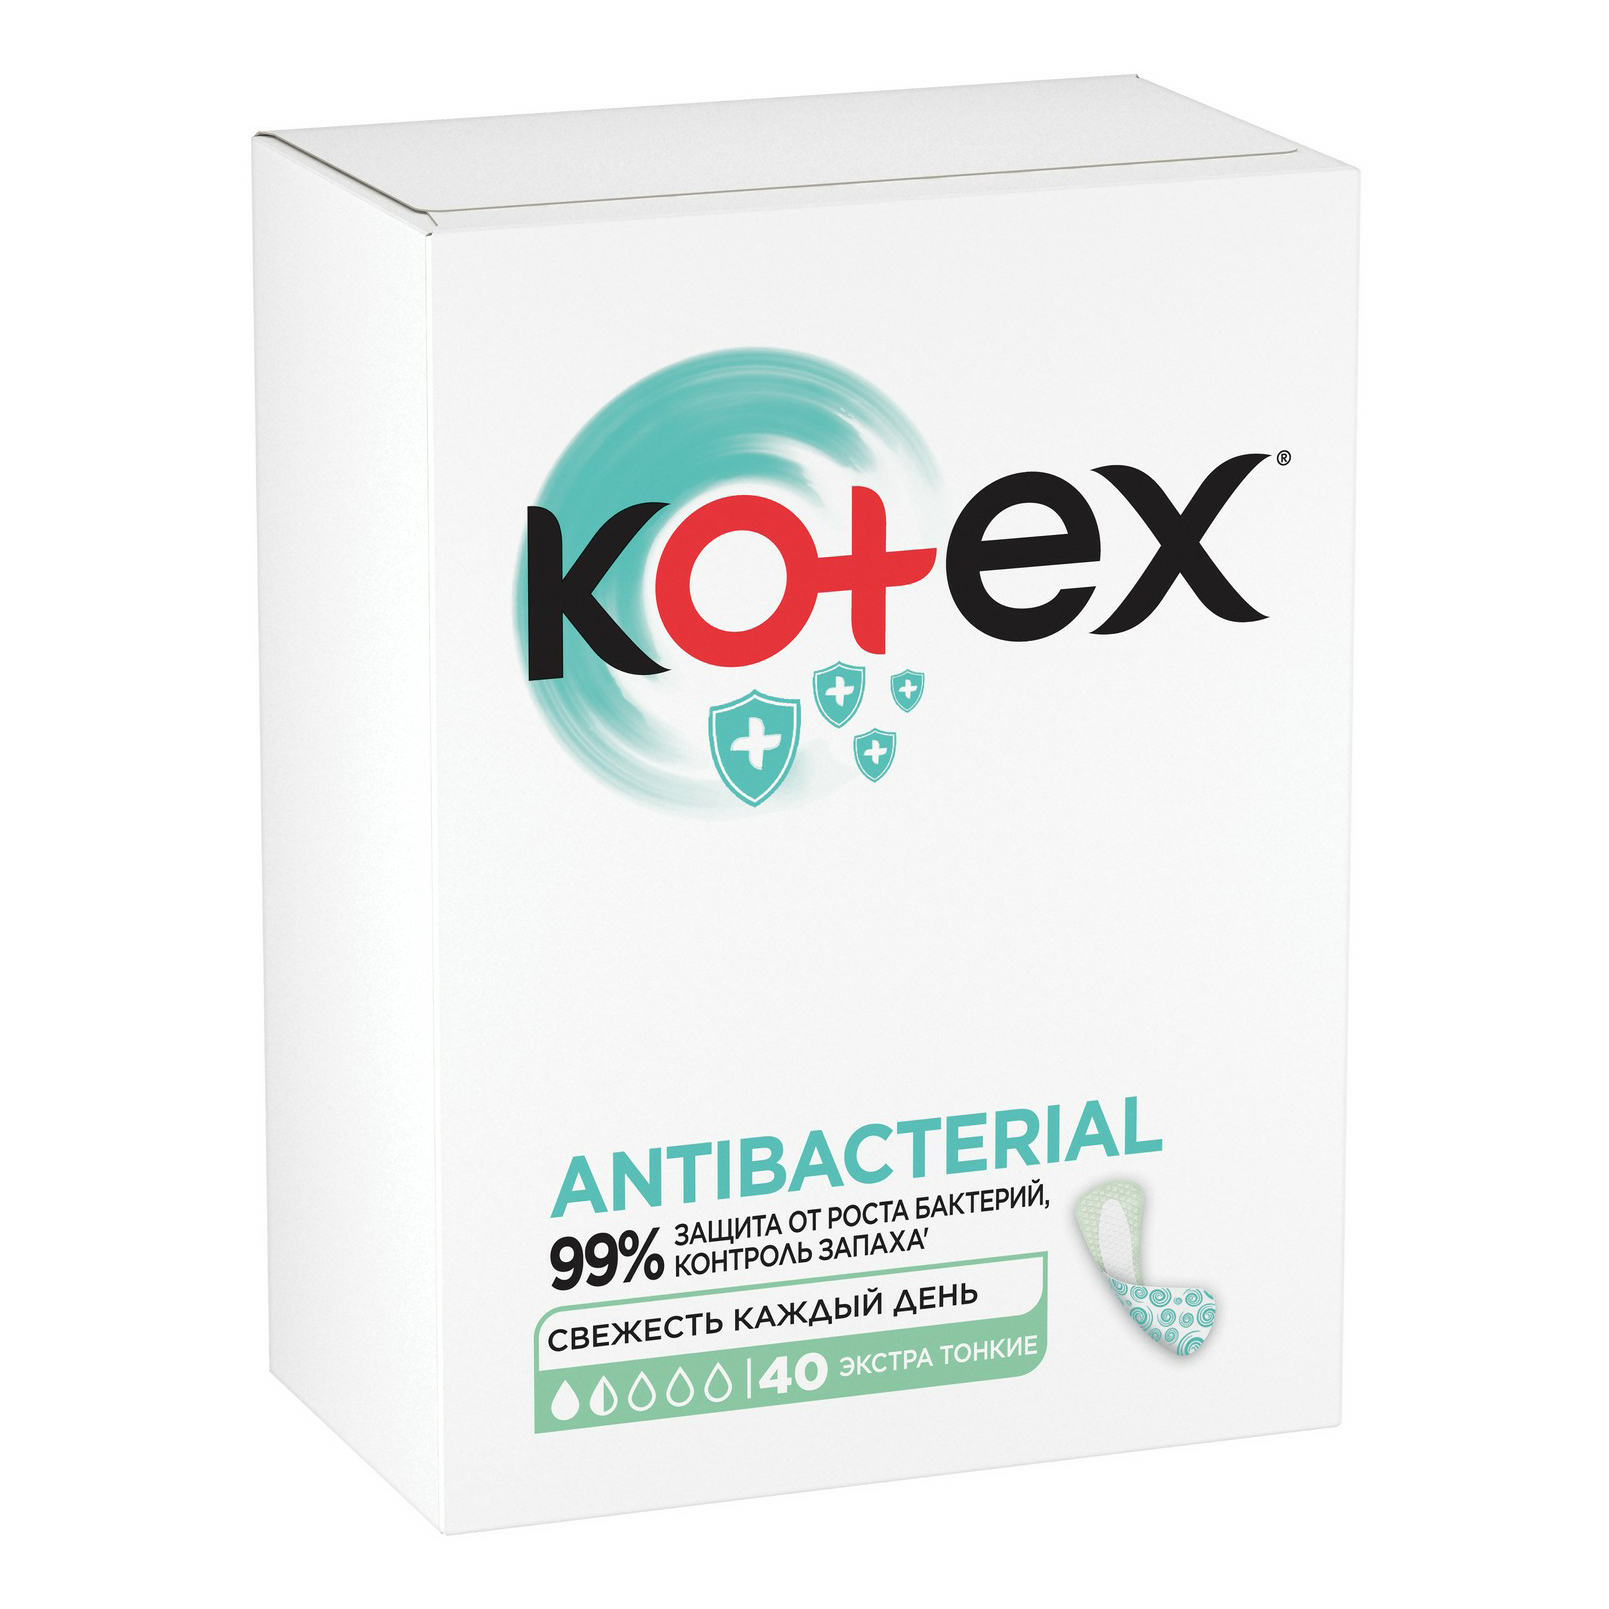 Прокладки экстратонкие ежедневные Kotex с антибактериальным слоем 40 шт прокладки экстратонкие ежедневные kotex с антибактериальным слоем 40 шт